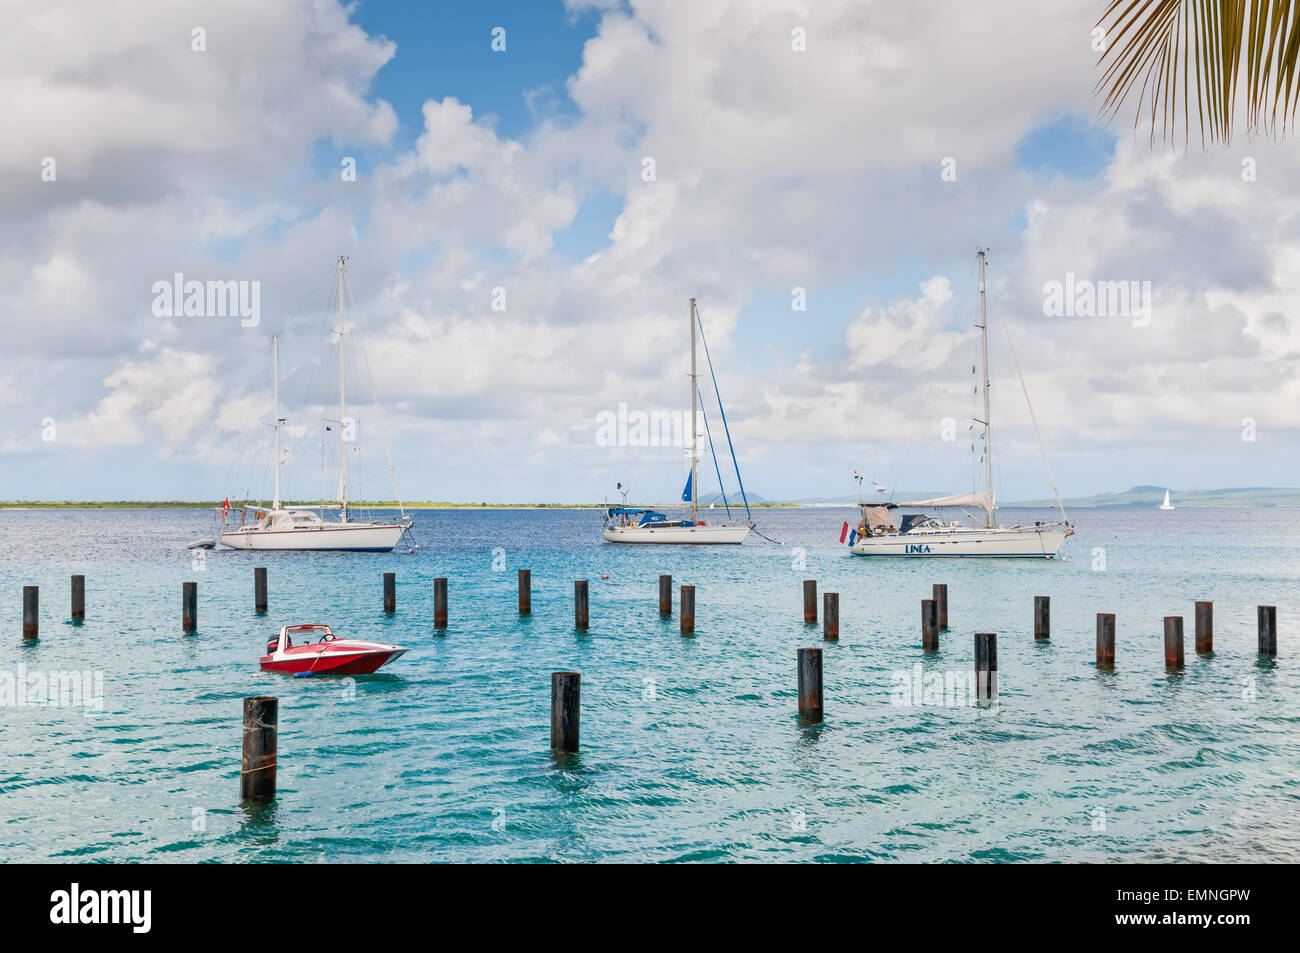 Les voiliers et bateau ancré dans le port de Bonaire, Antilles néerlandaises Banque D'Images